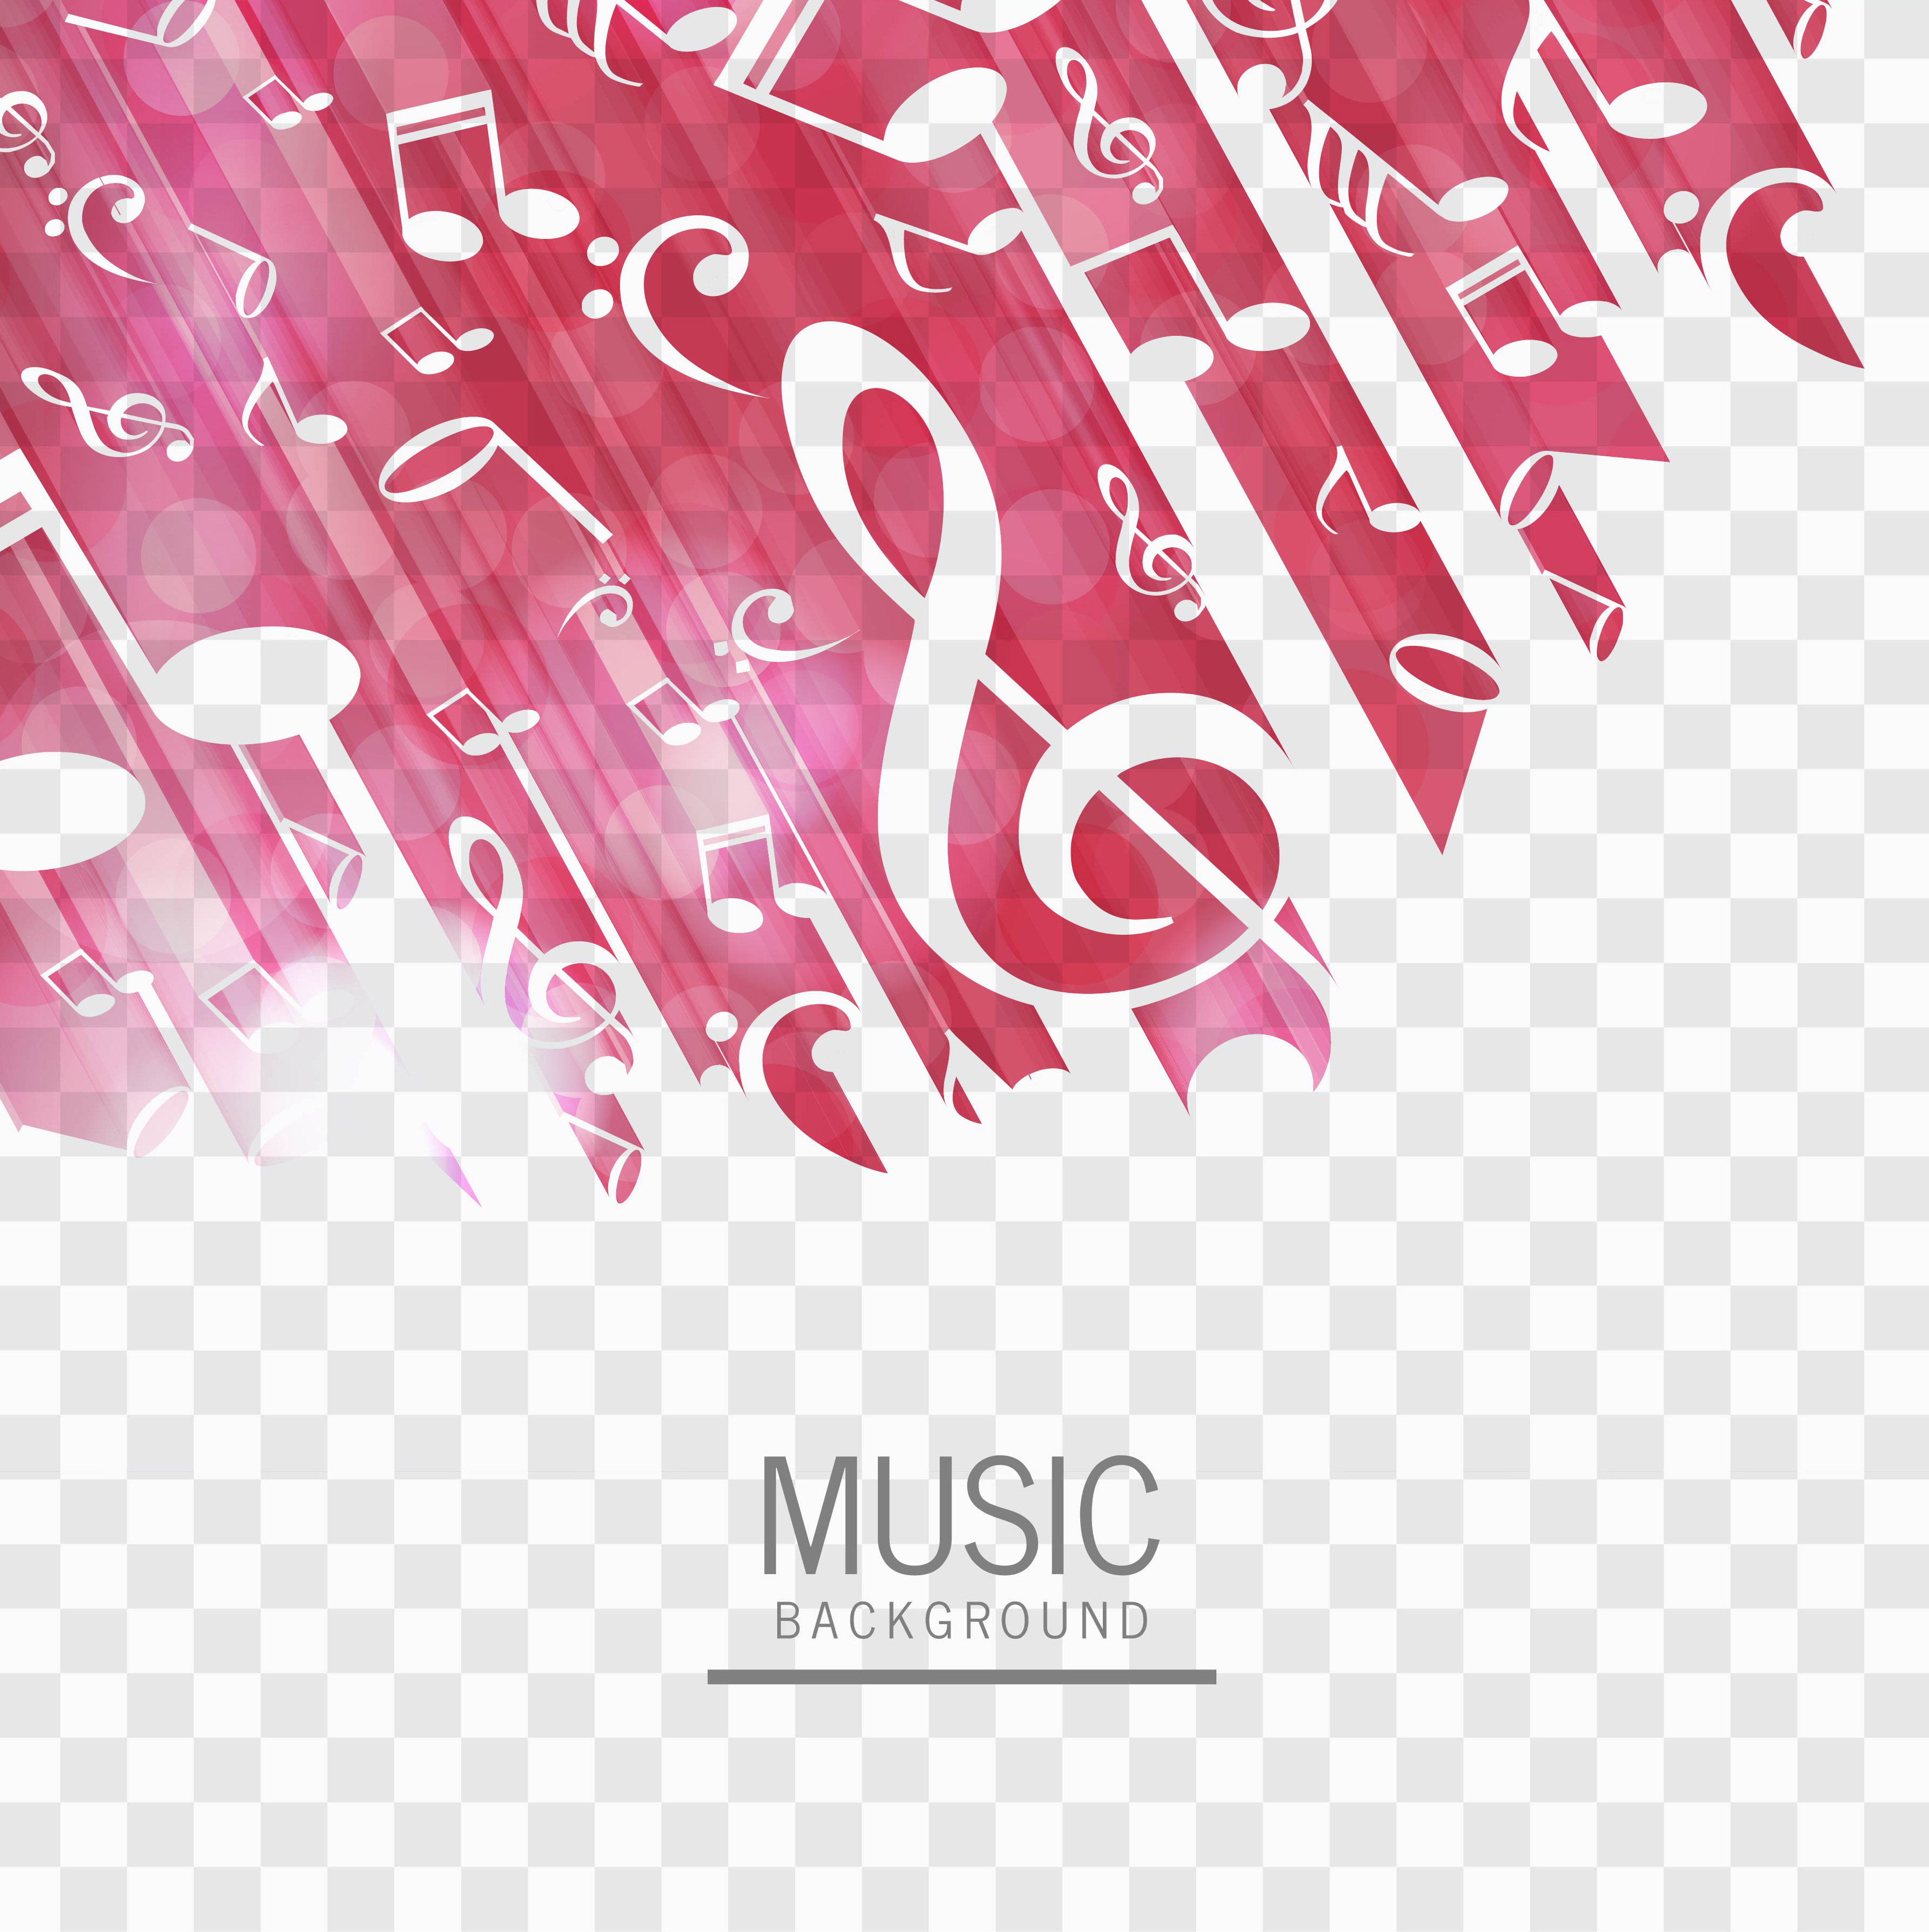 1000 Free Music Background  Music Images  Pixabay